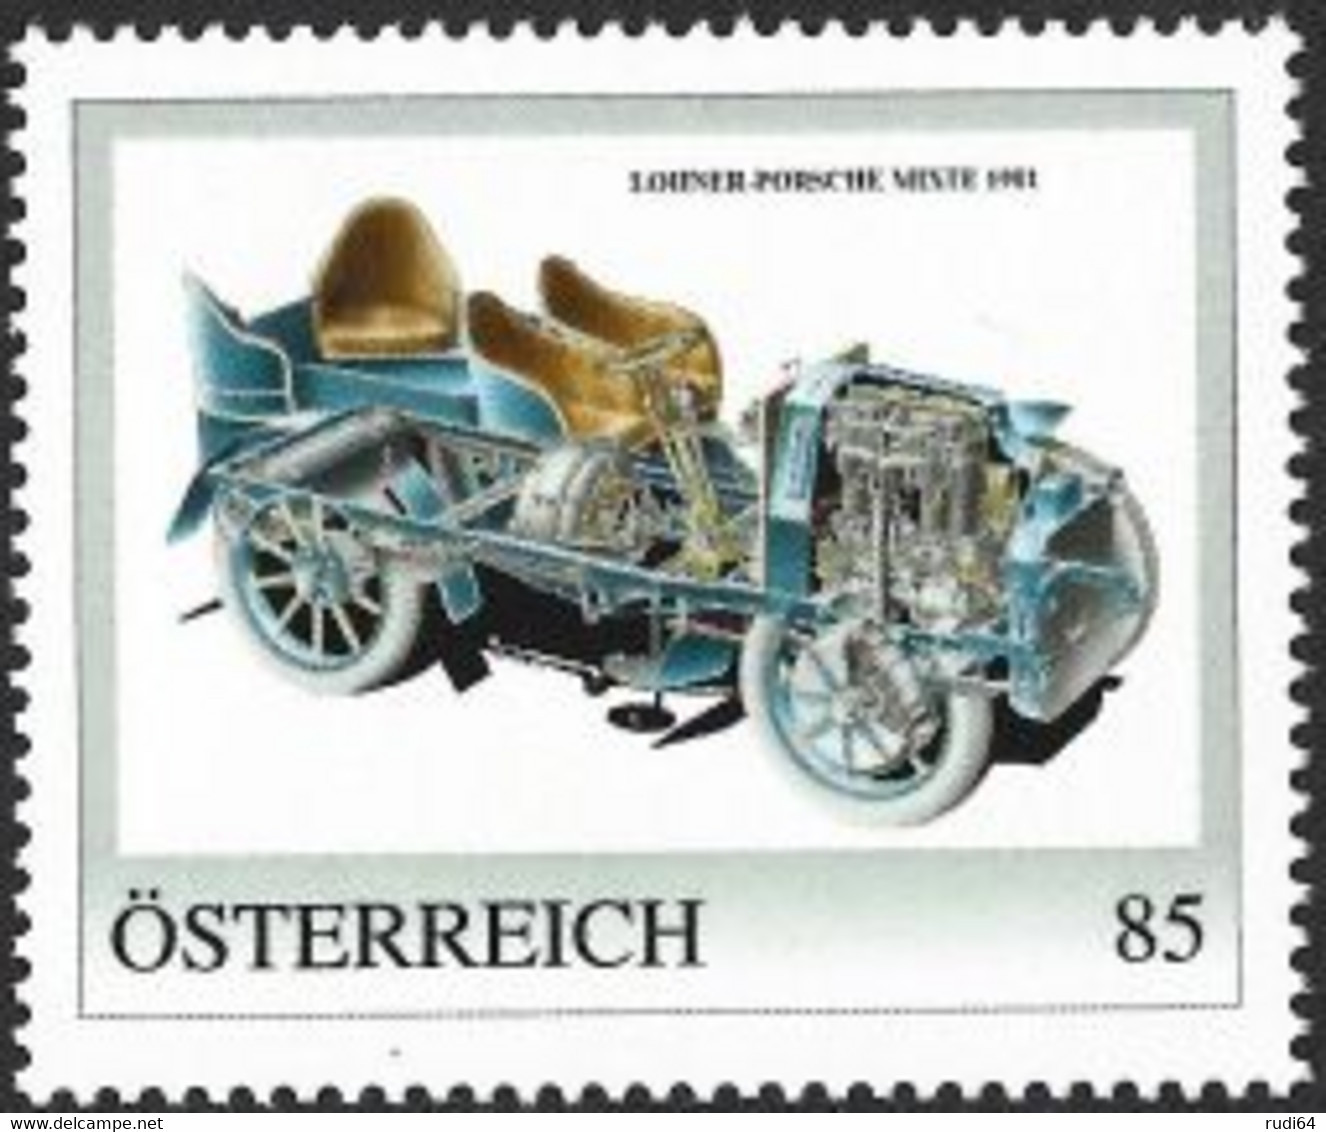 2022 Lohner-Porsche Mixte 1901, Personalisierte Briefmarke 2022, Konstruktion Von Ferdinand Porsche, 85 Cent, Automobile - Nuovi